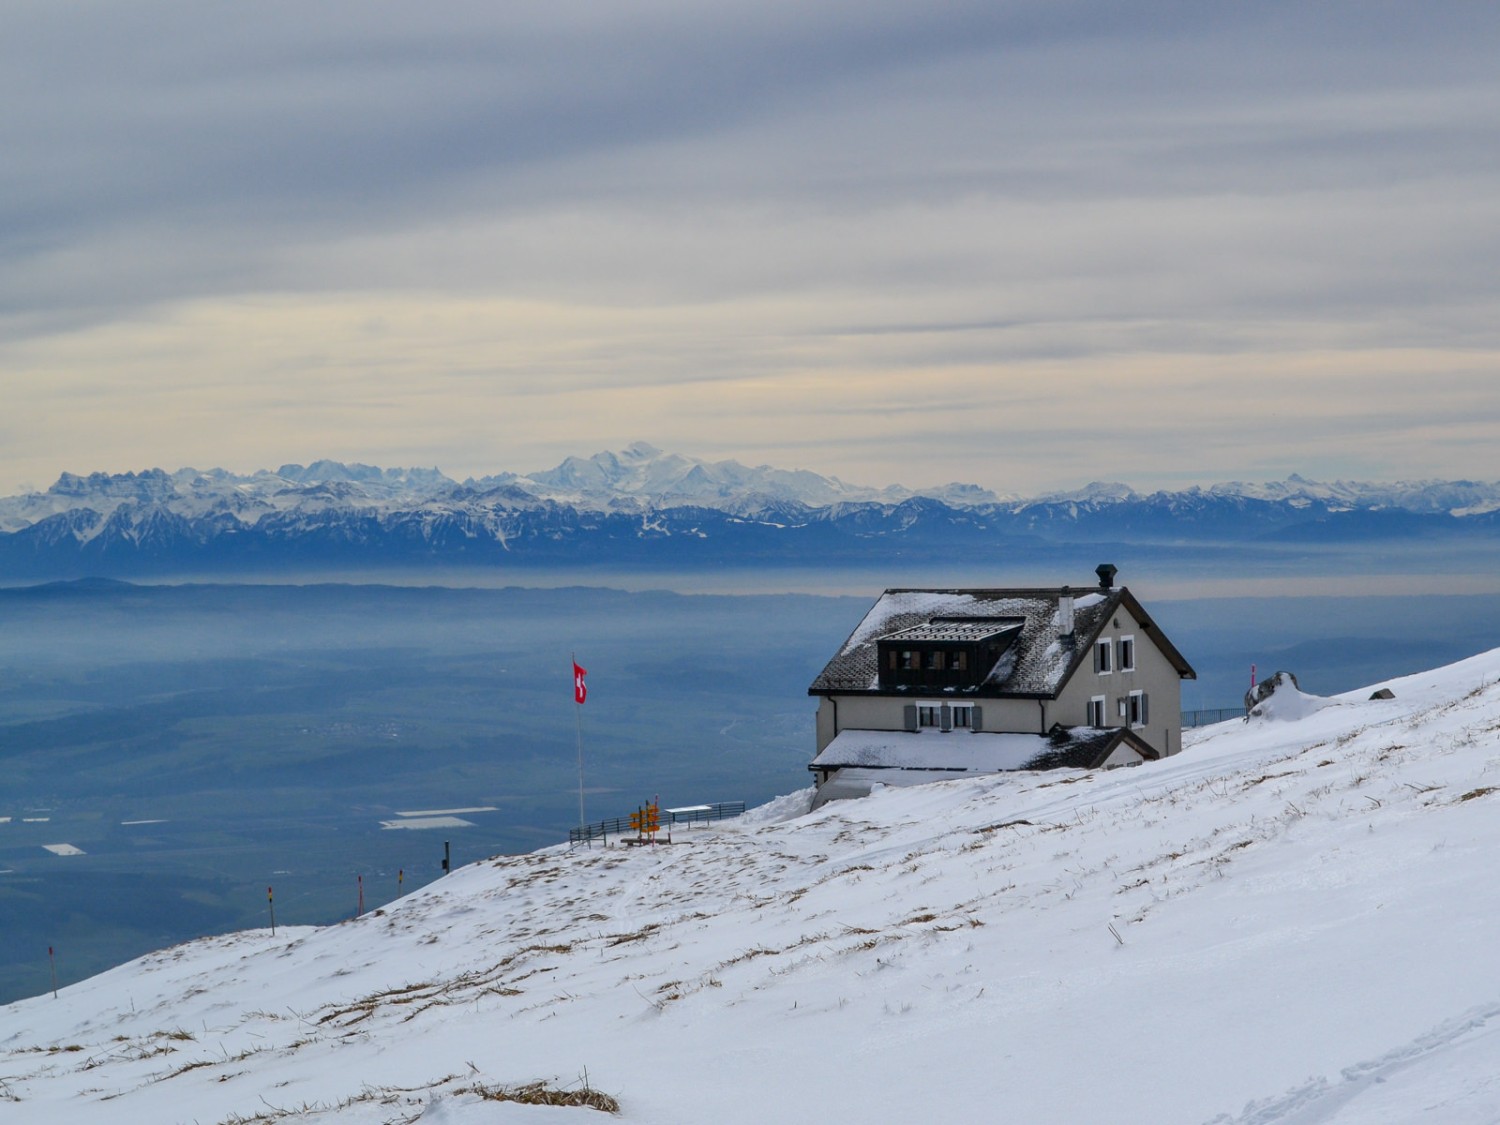 Über dem Hotel Chasseron erhebt sich der Mont Blanc.
